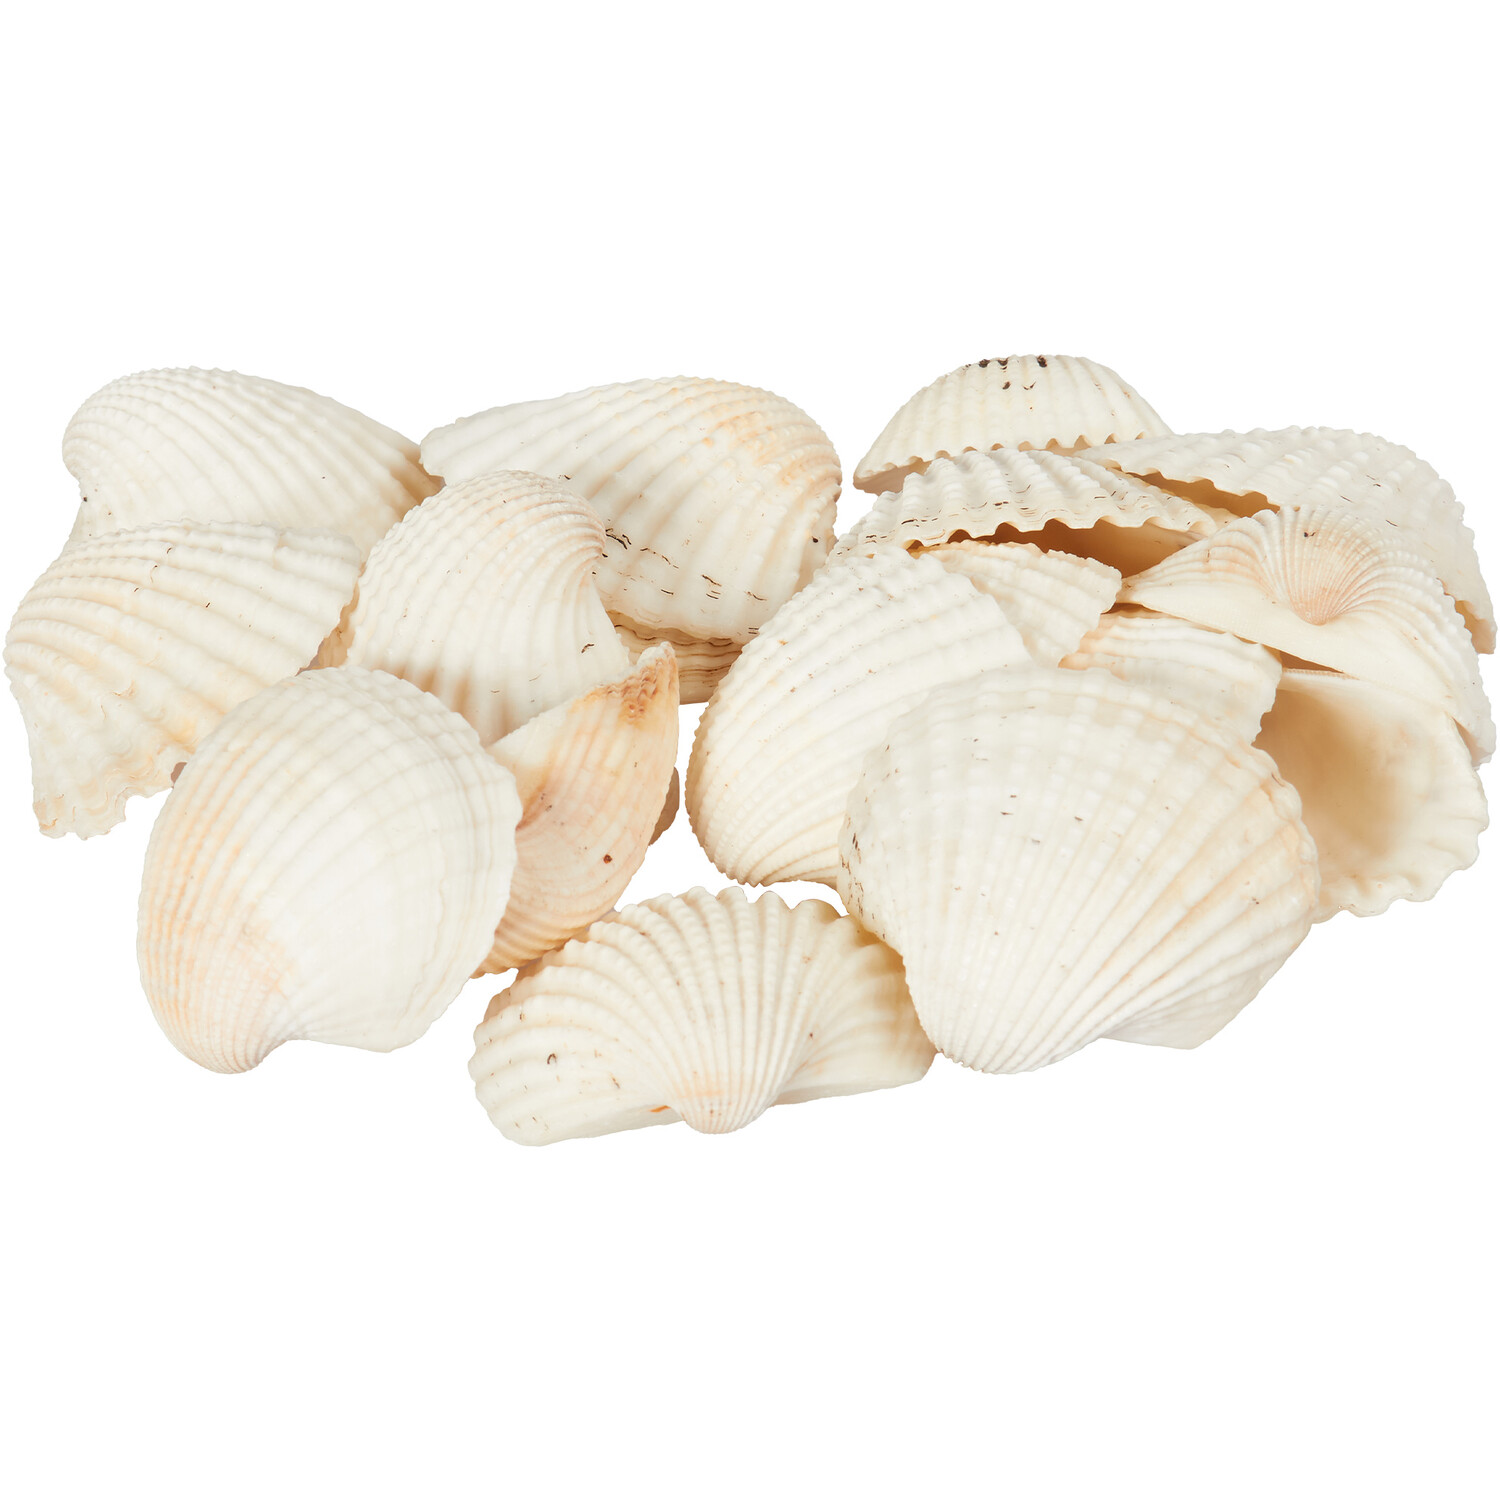 Shells in Net Bag - Natural Image 2